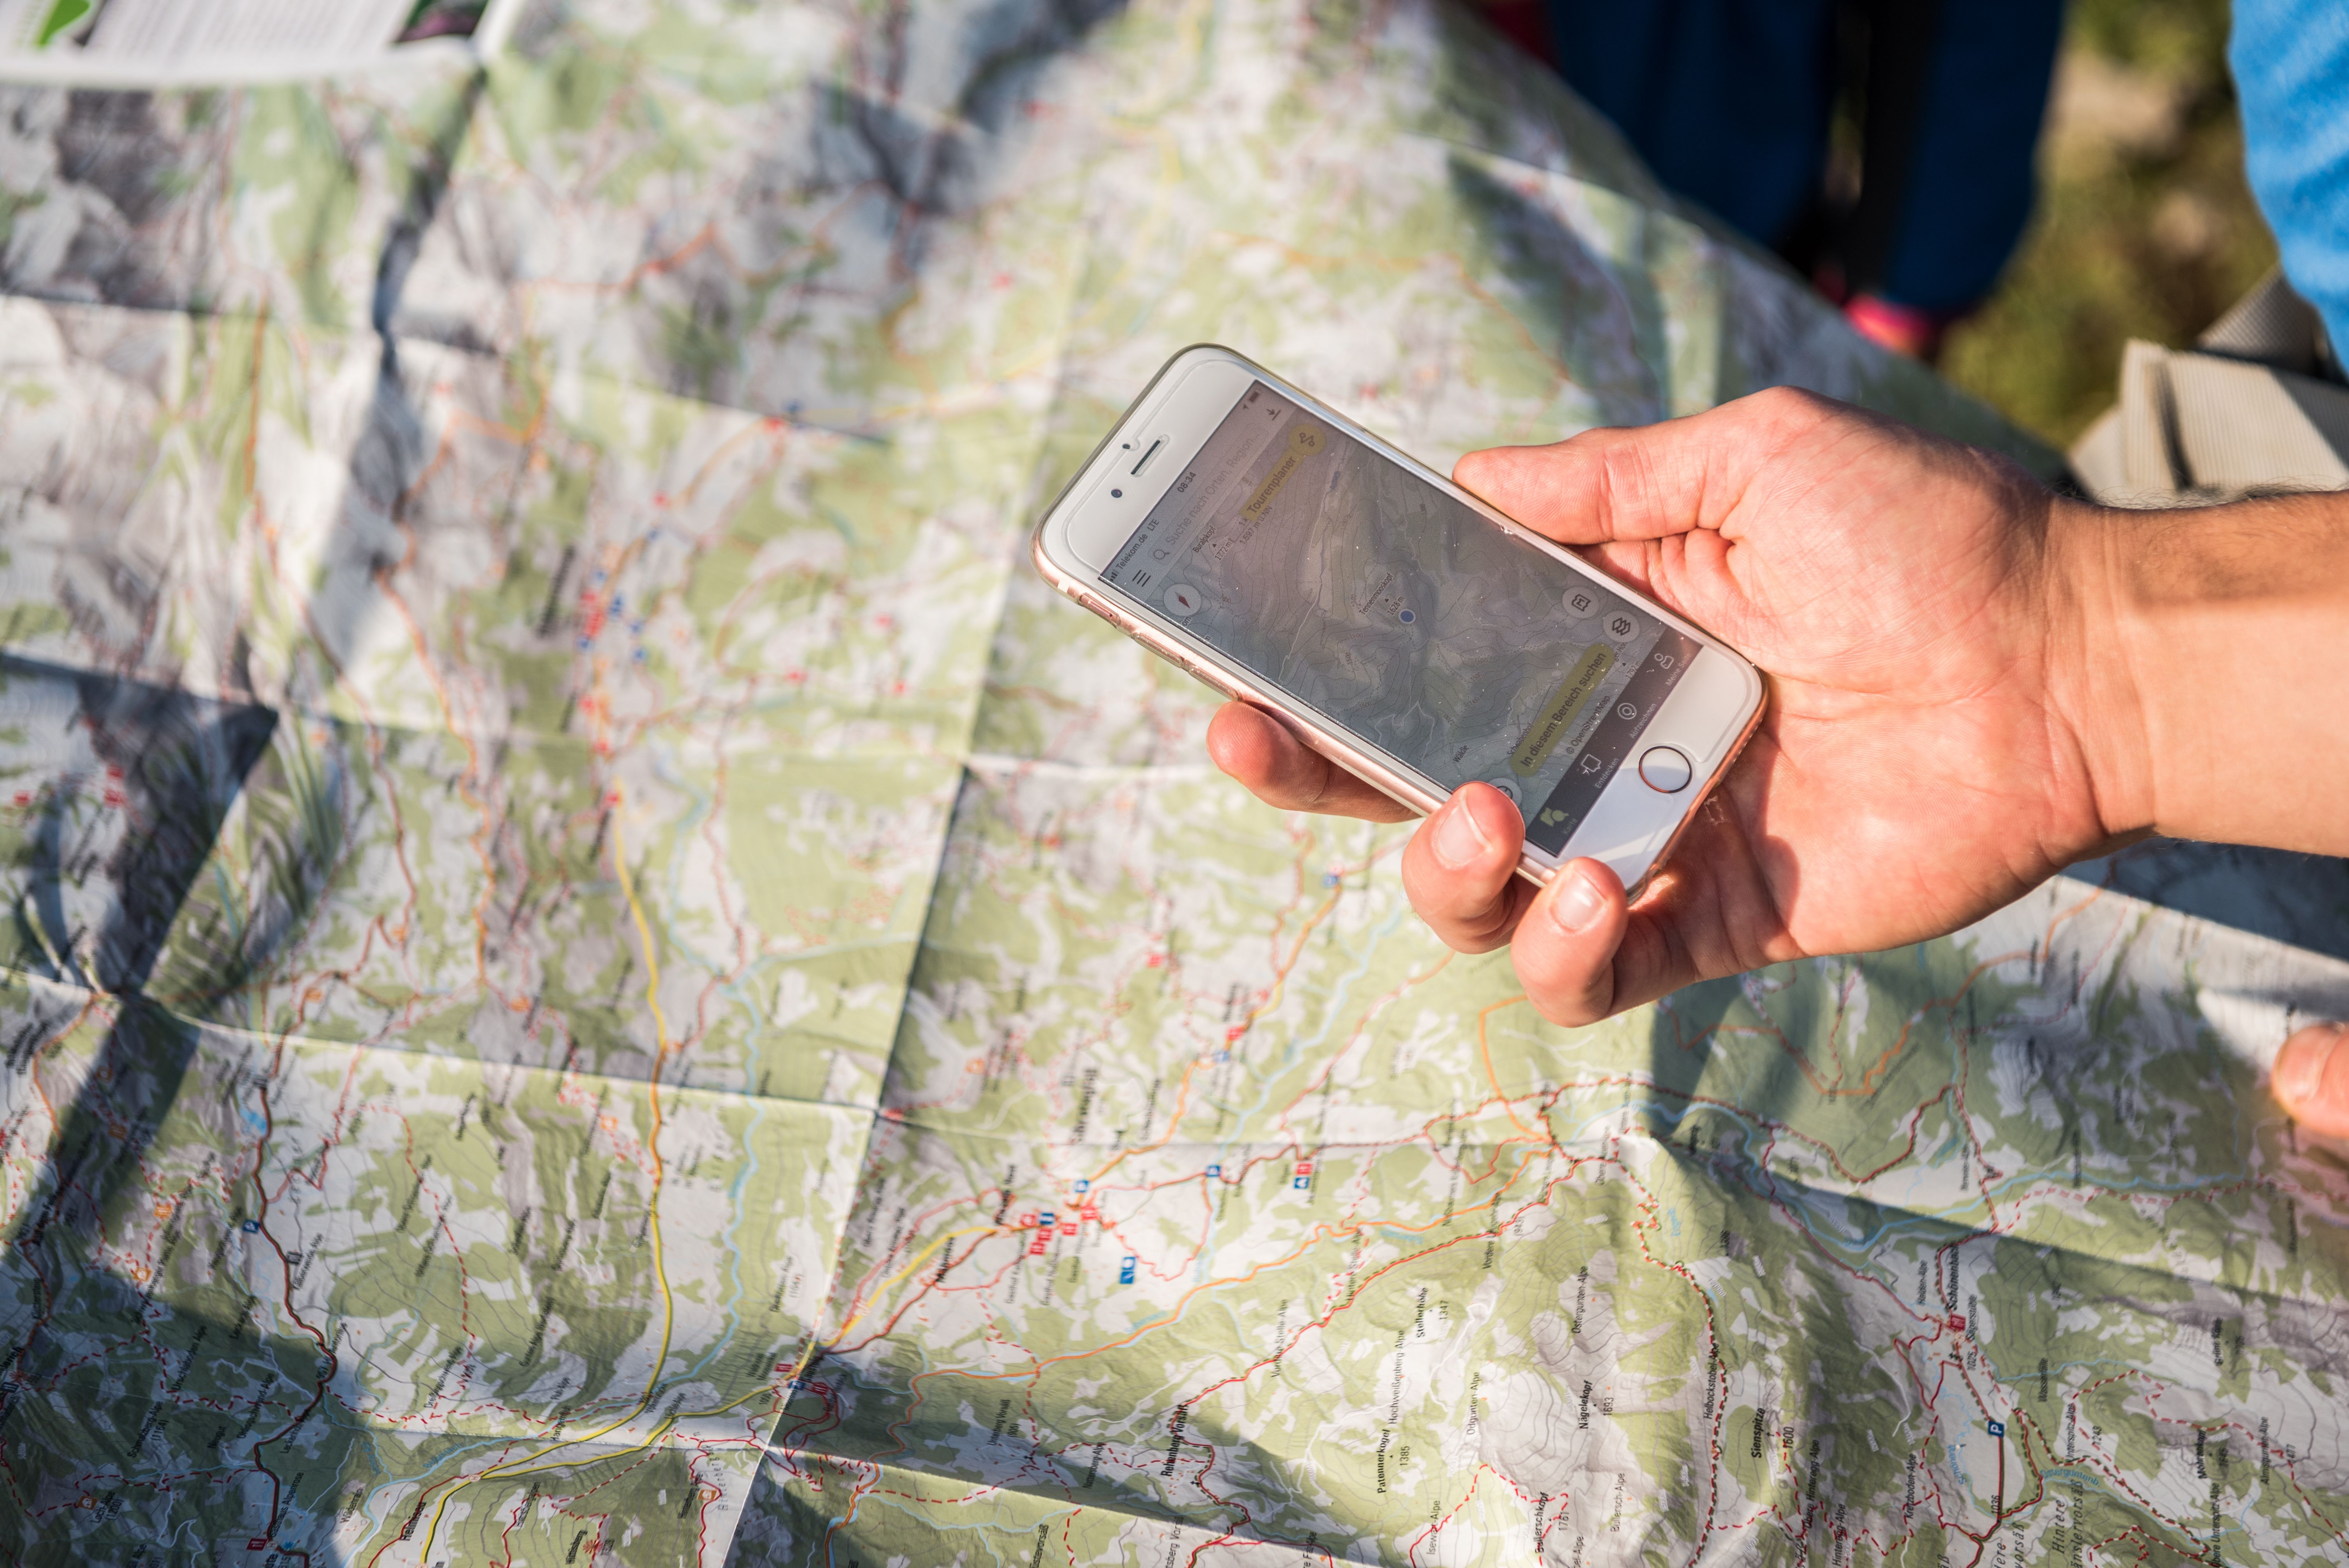 Wanderkarte und Smartphone zur Orientierung beim Wandern